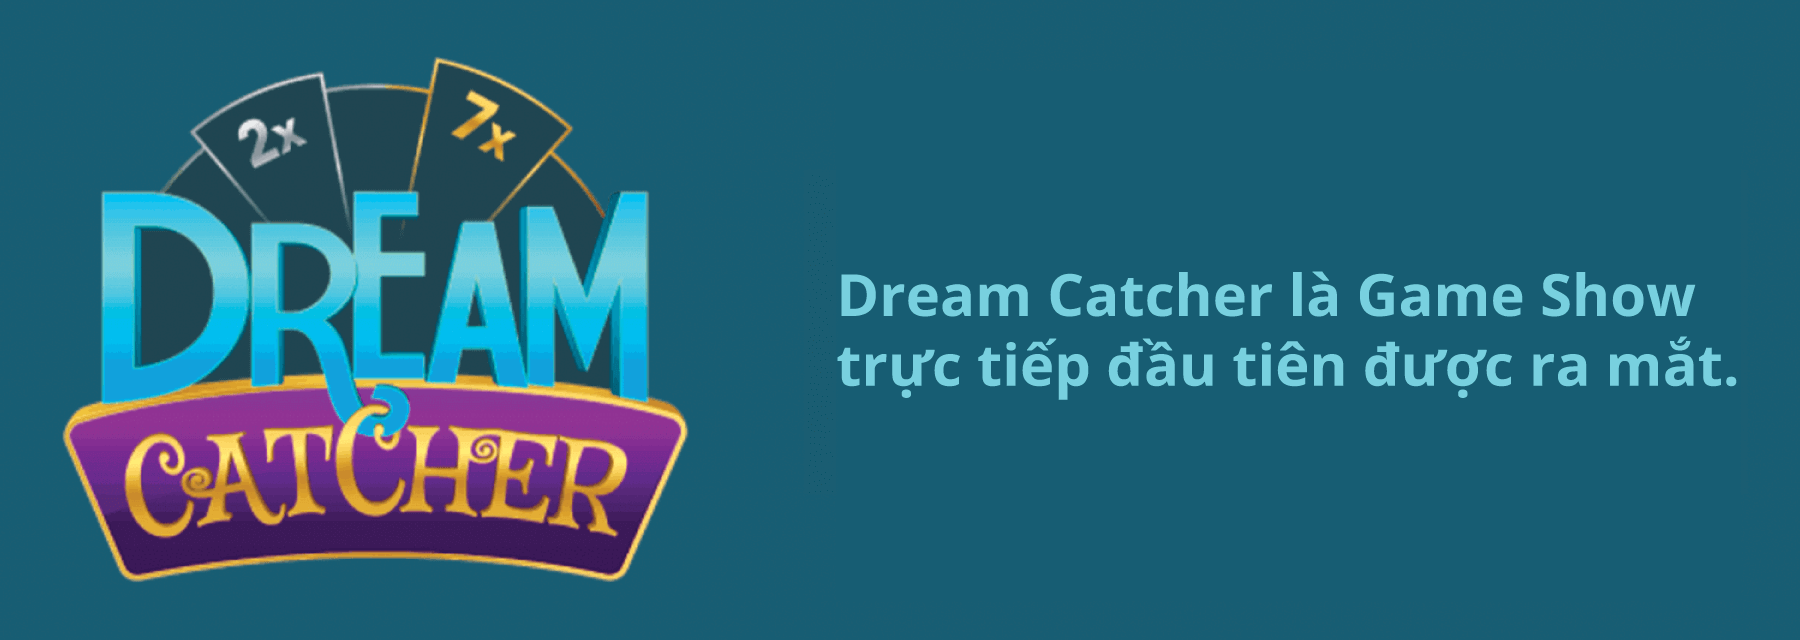 Dream Catcher là game show đầu tiên trên thế giới